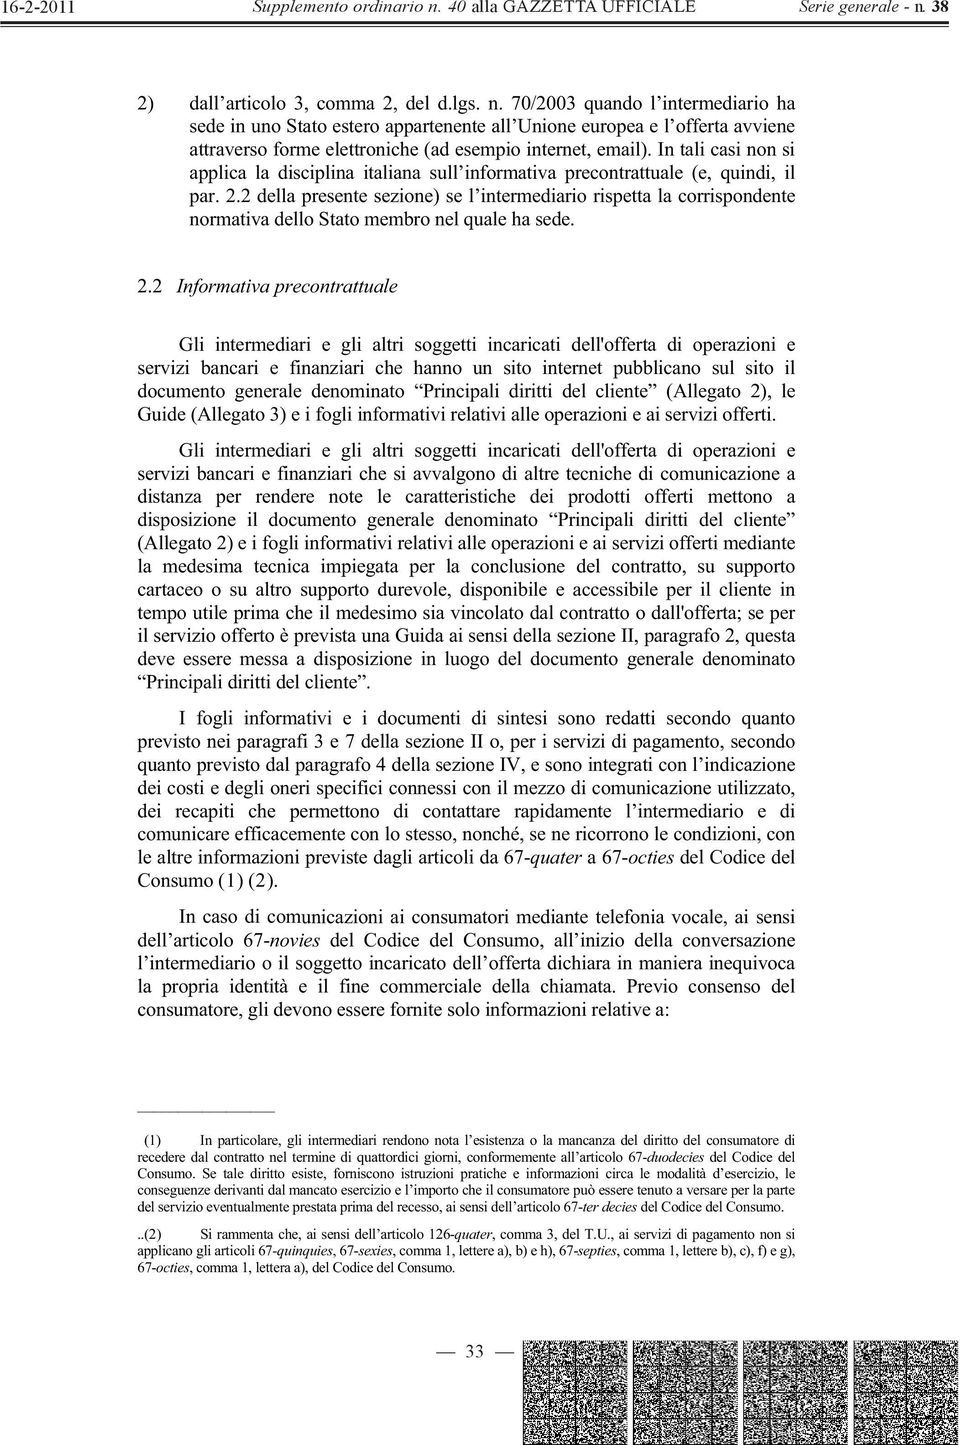 In tali casi non si applica la disciplina italiana sull informativa precontrattuale (e, quindi, il par. 2.